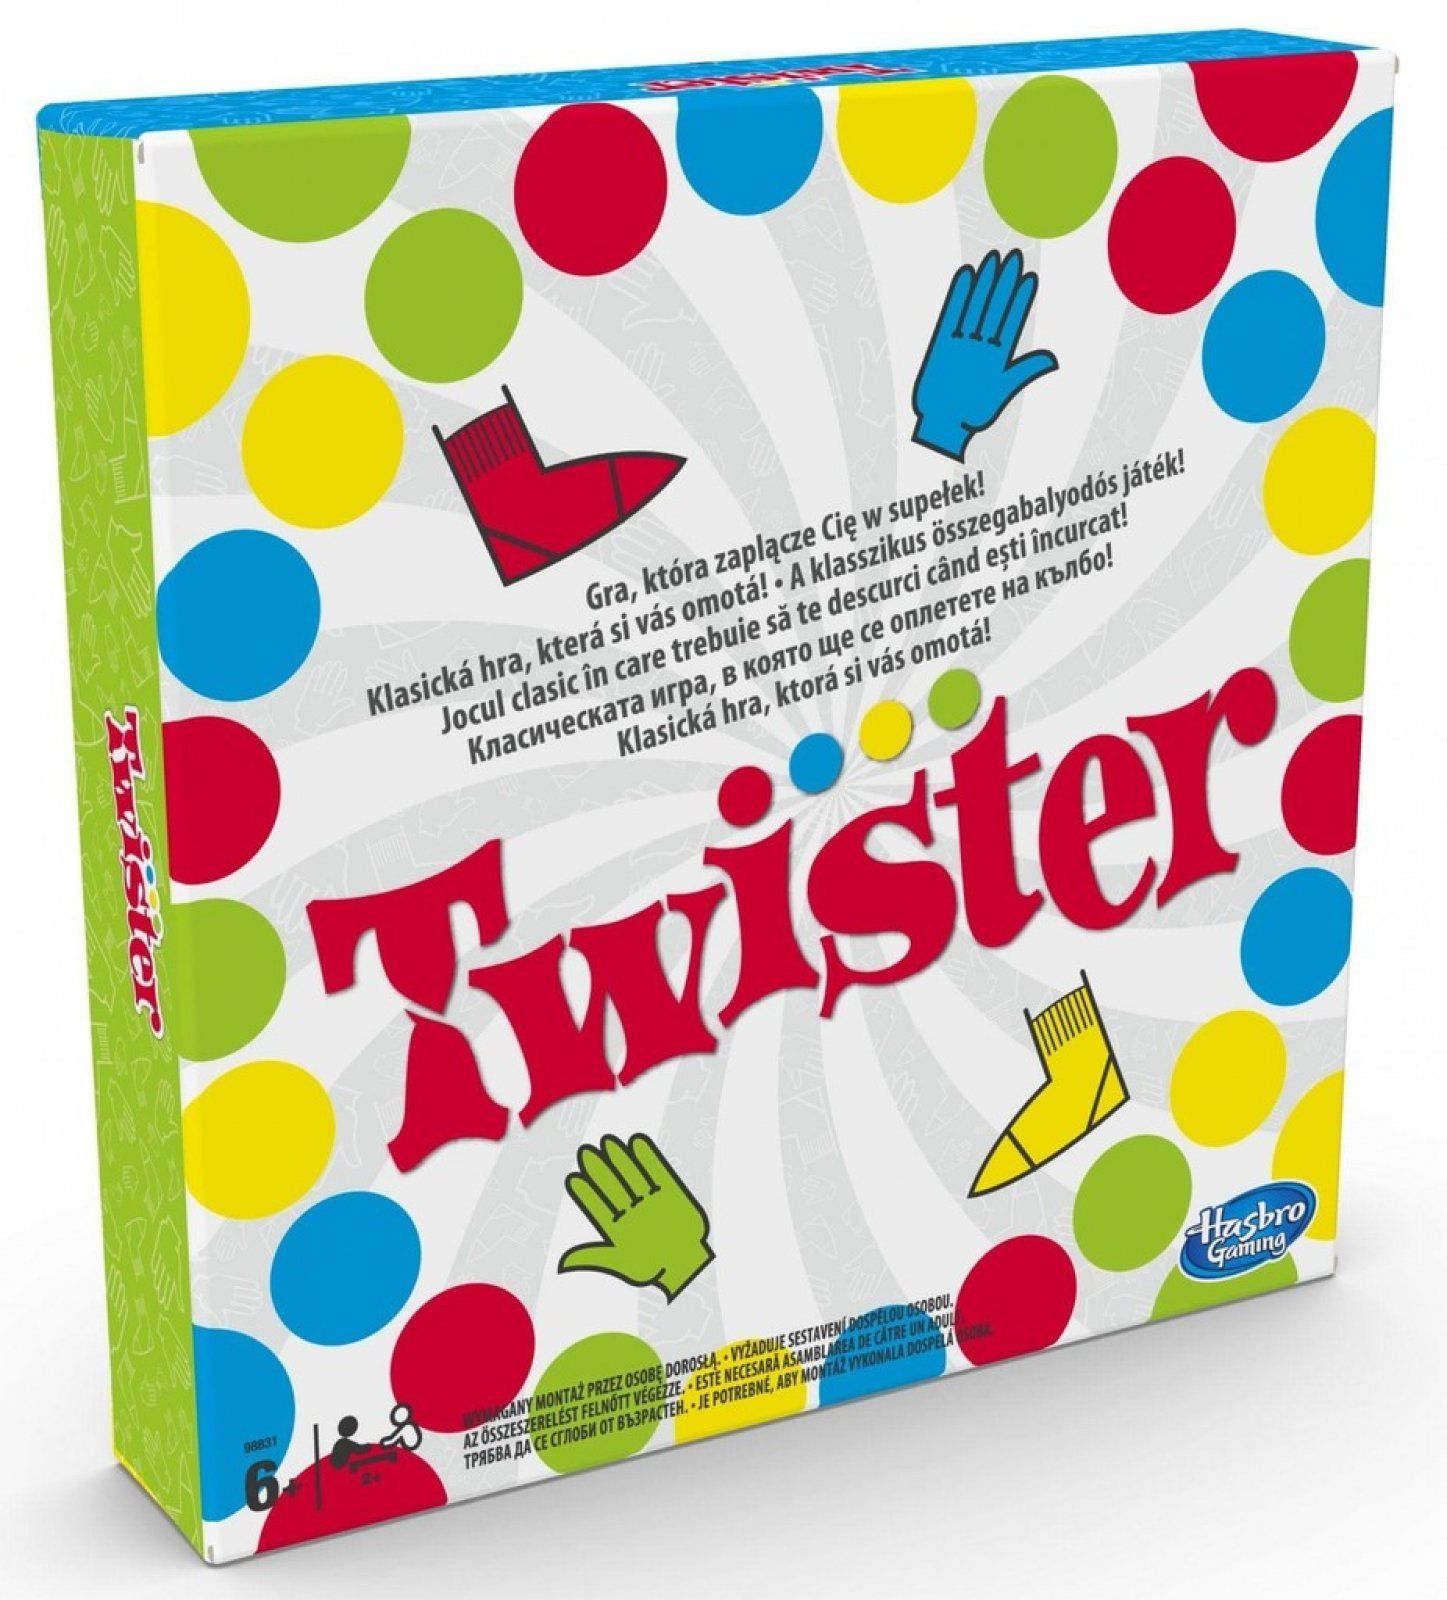 Twister - nová verze zábavné hry Hasbro